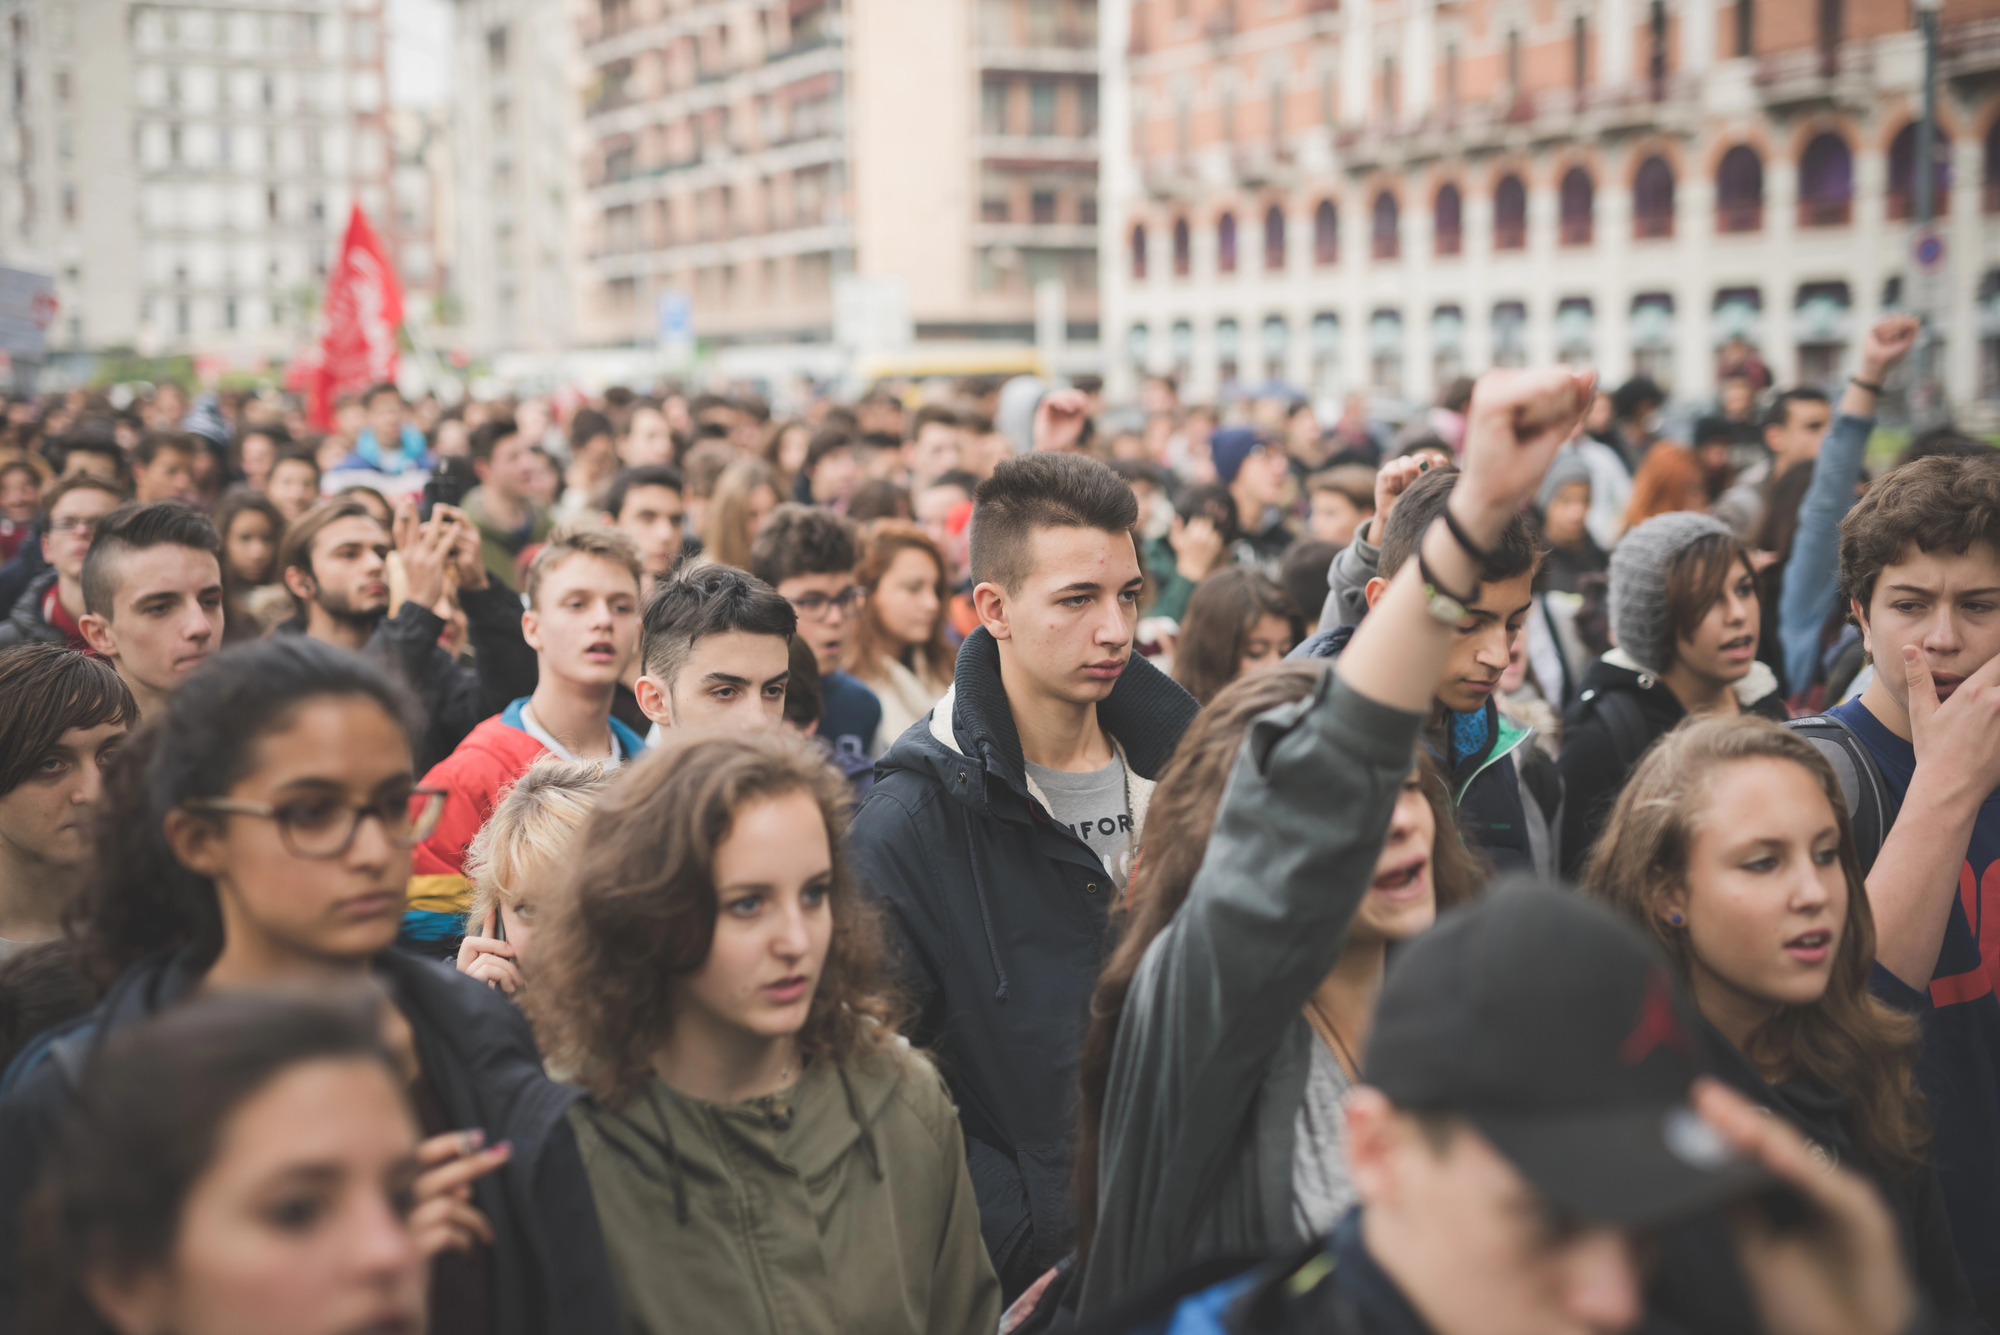 Münster: Polizei plant Sicherheitsmaßnahmen zum Schutz von Versammlungen gegen den AfD-Neujahrsempfang – viele Demonstranten werden erwartet